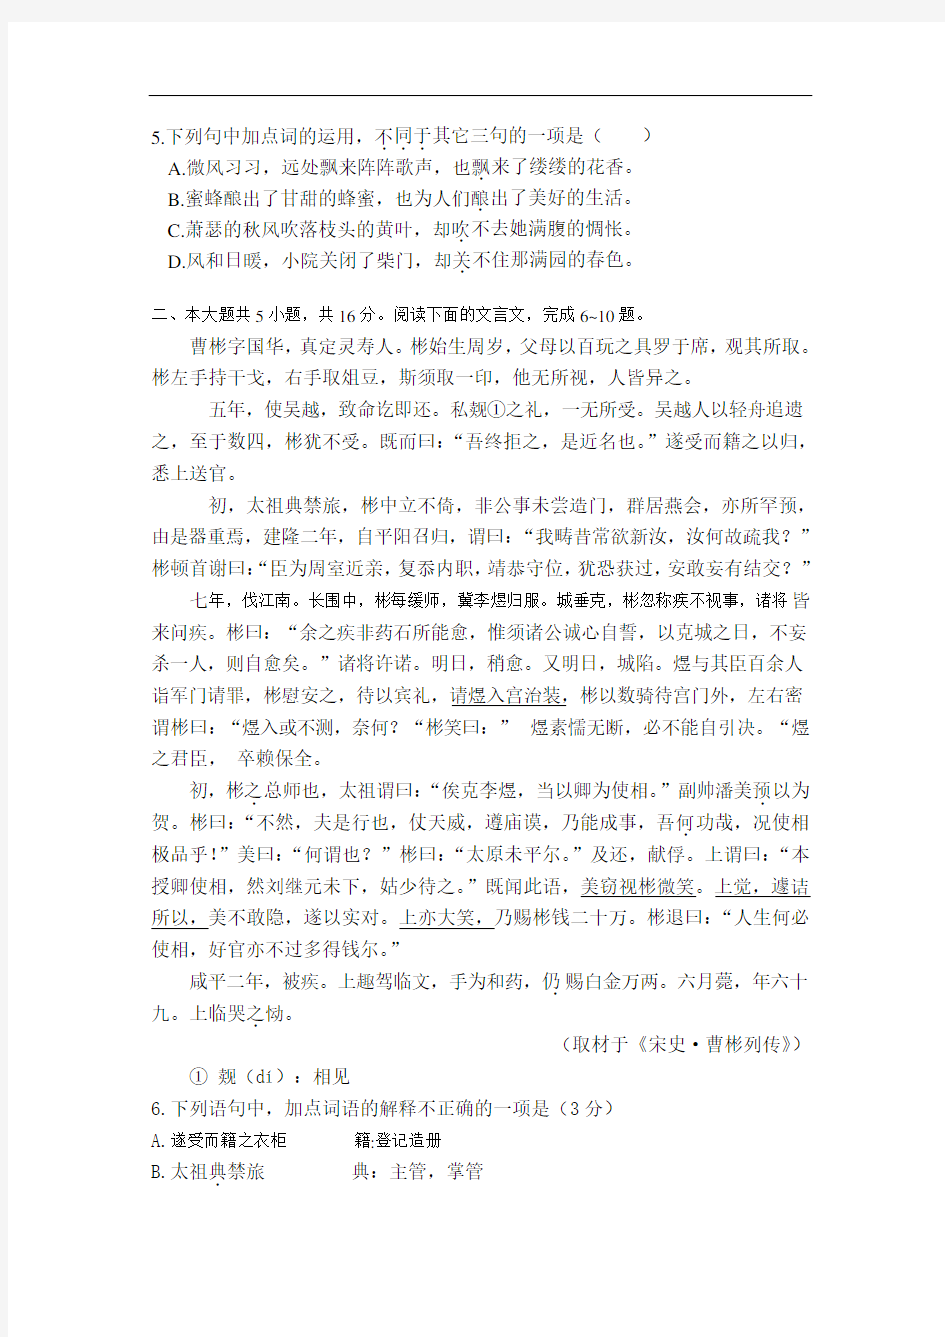 2013年北京高考语文试卷及答案